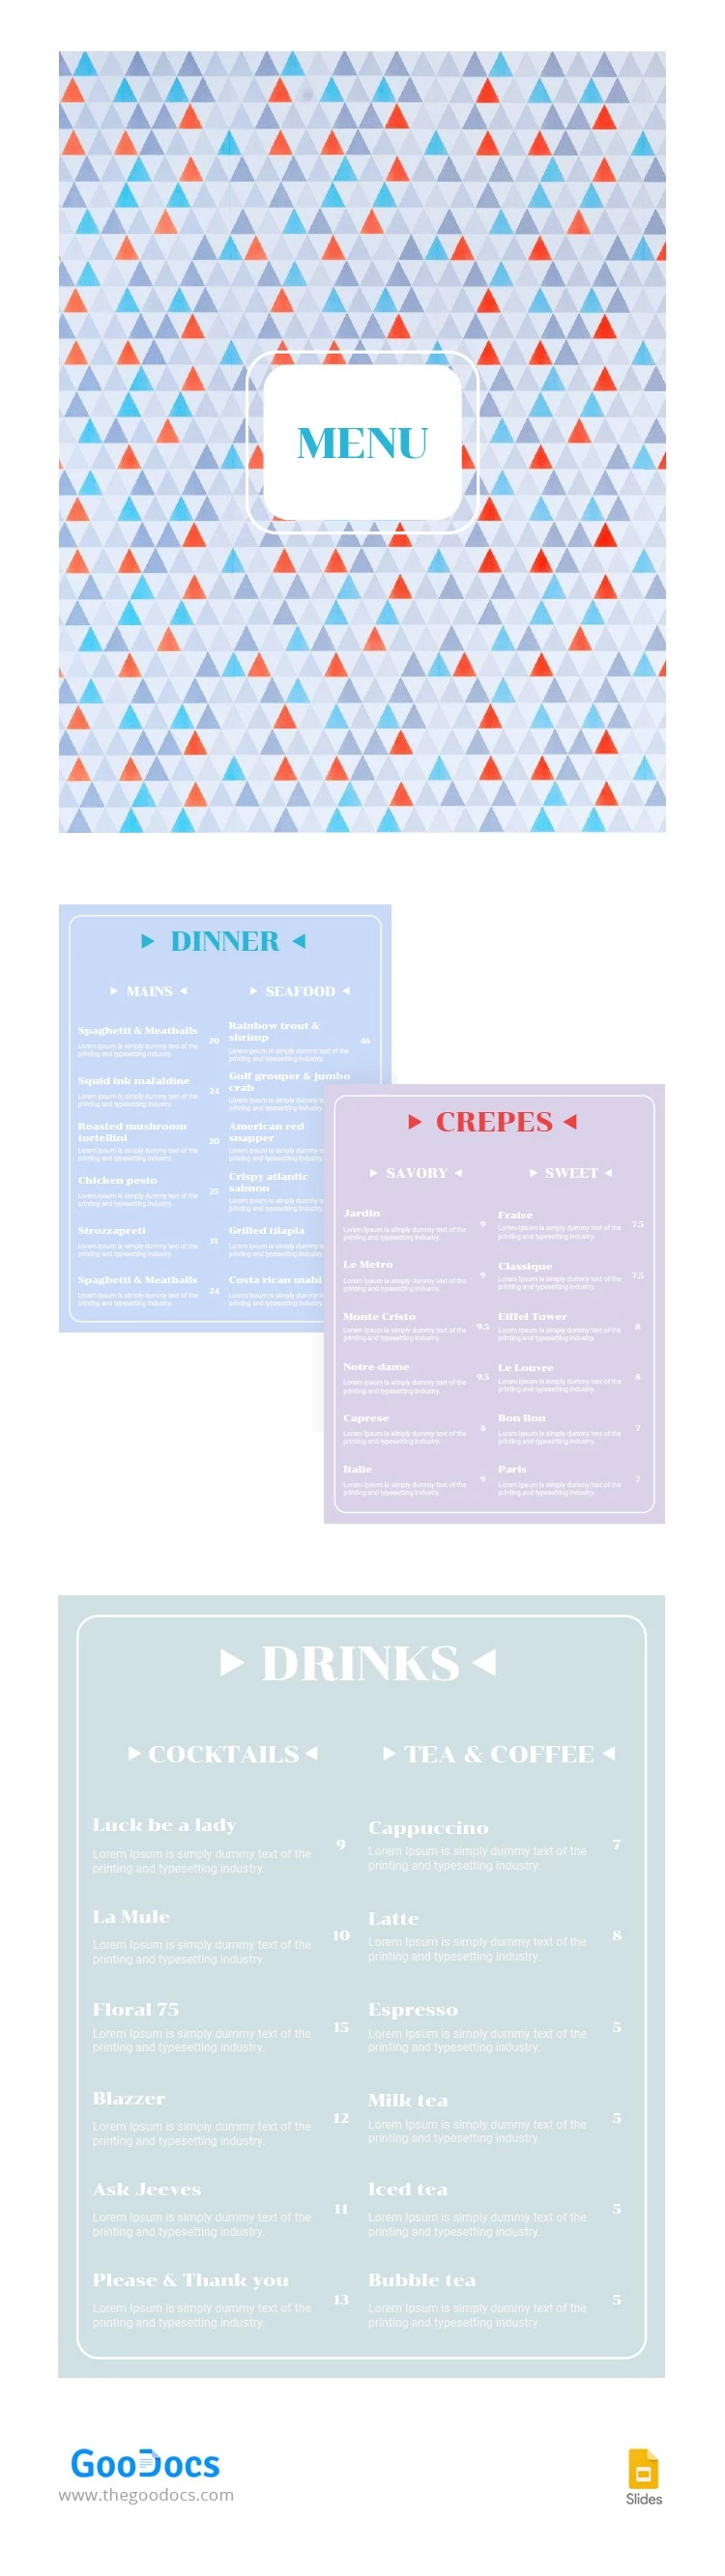 Cardápio de Restaurante Moderno - free Google Docs Template - 10062907